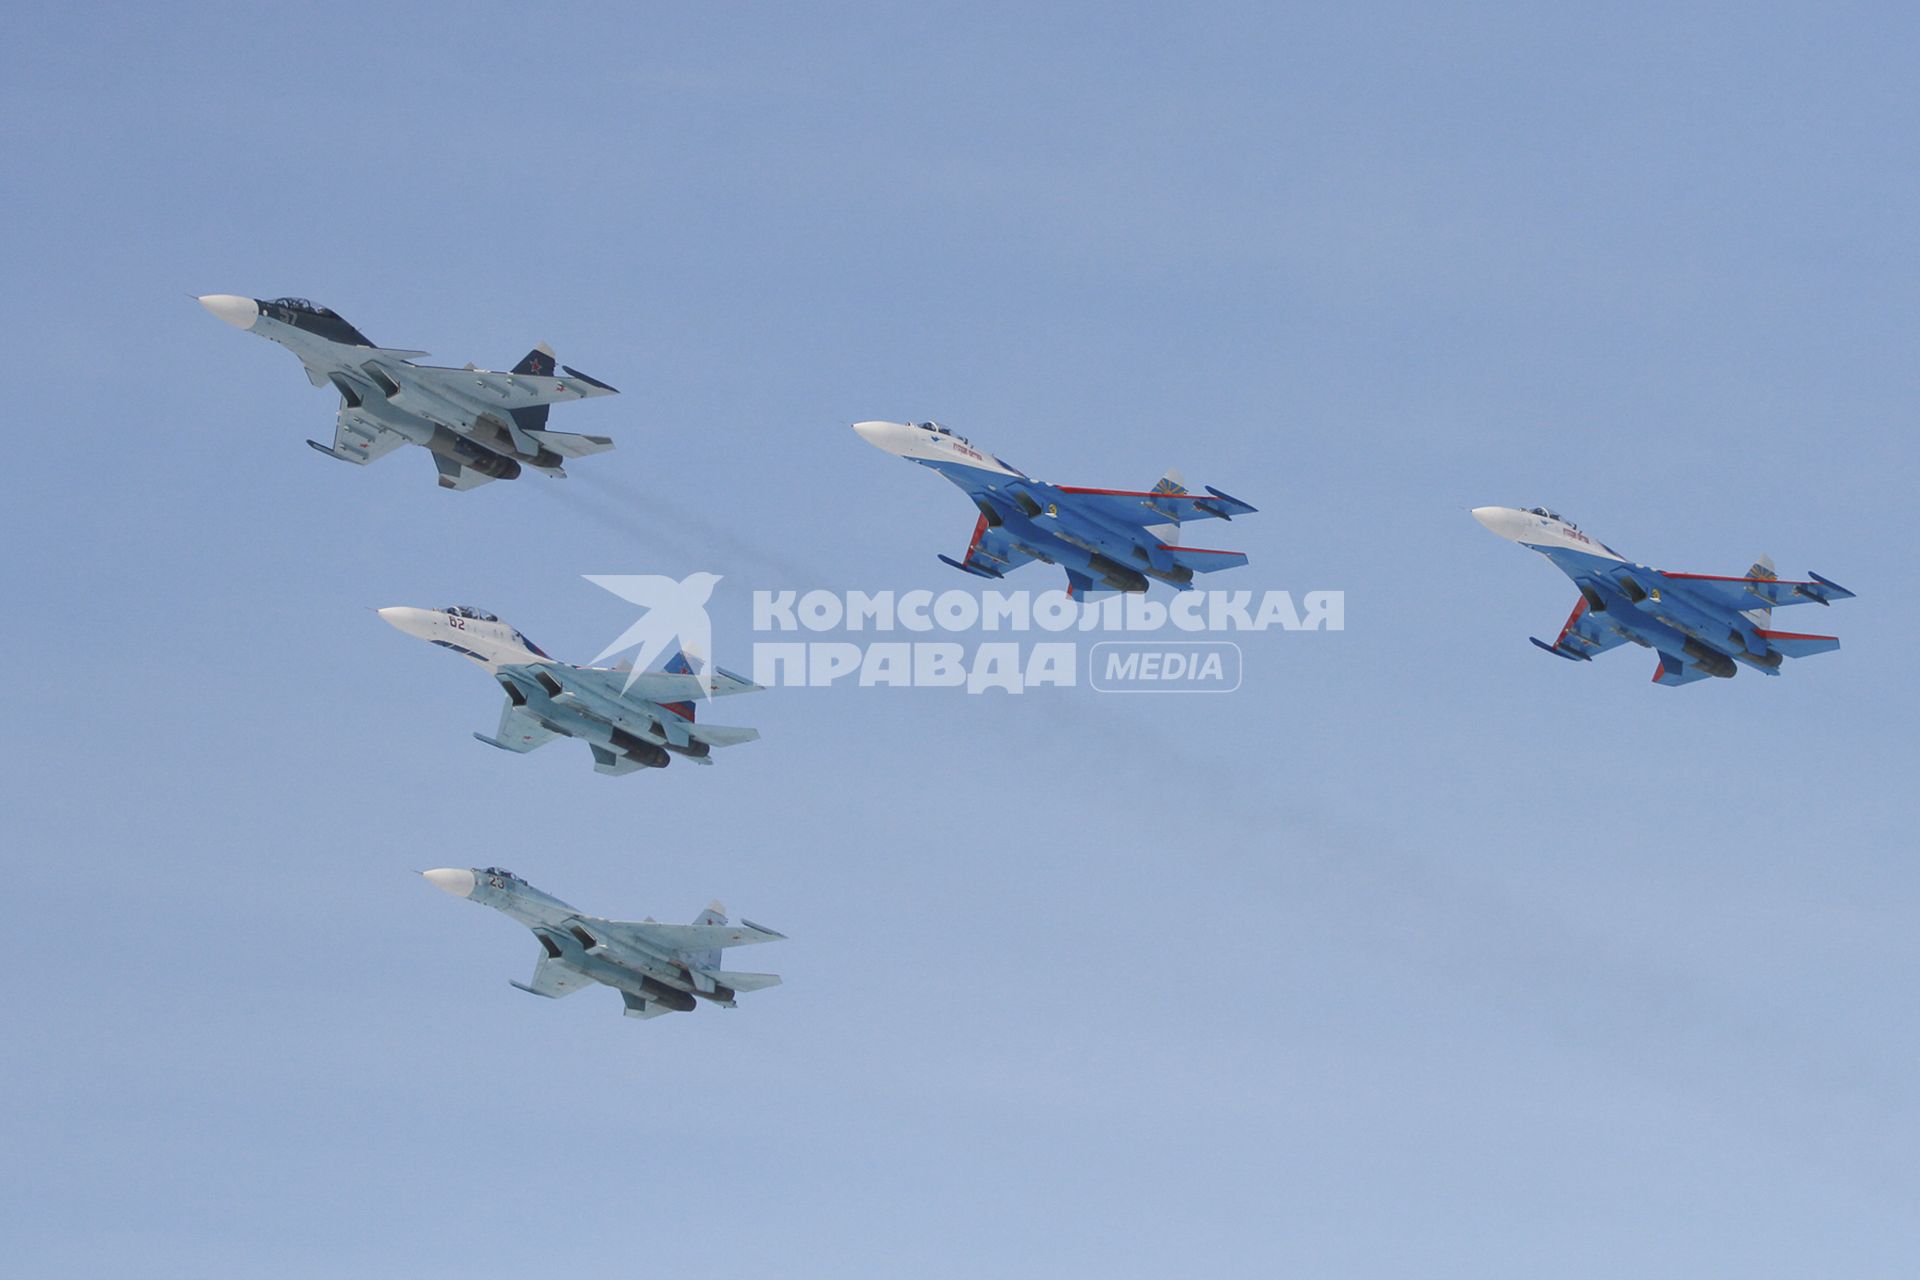 Барнаул. Авиашоу. На снимке: пилотажные группы `Соколы России` Су-27 (слева) и `Русские Витязи` Су-27.